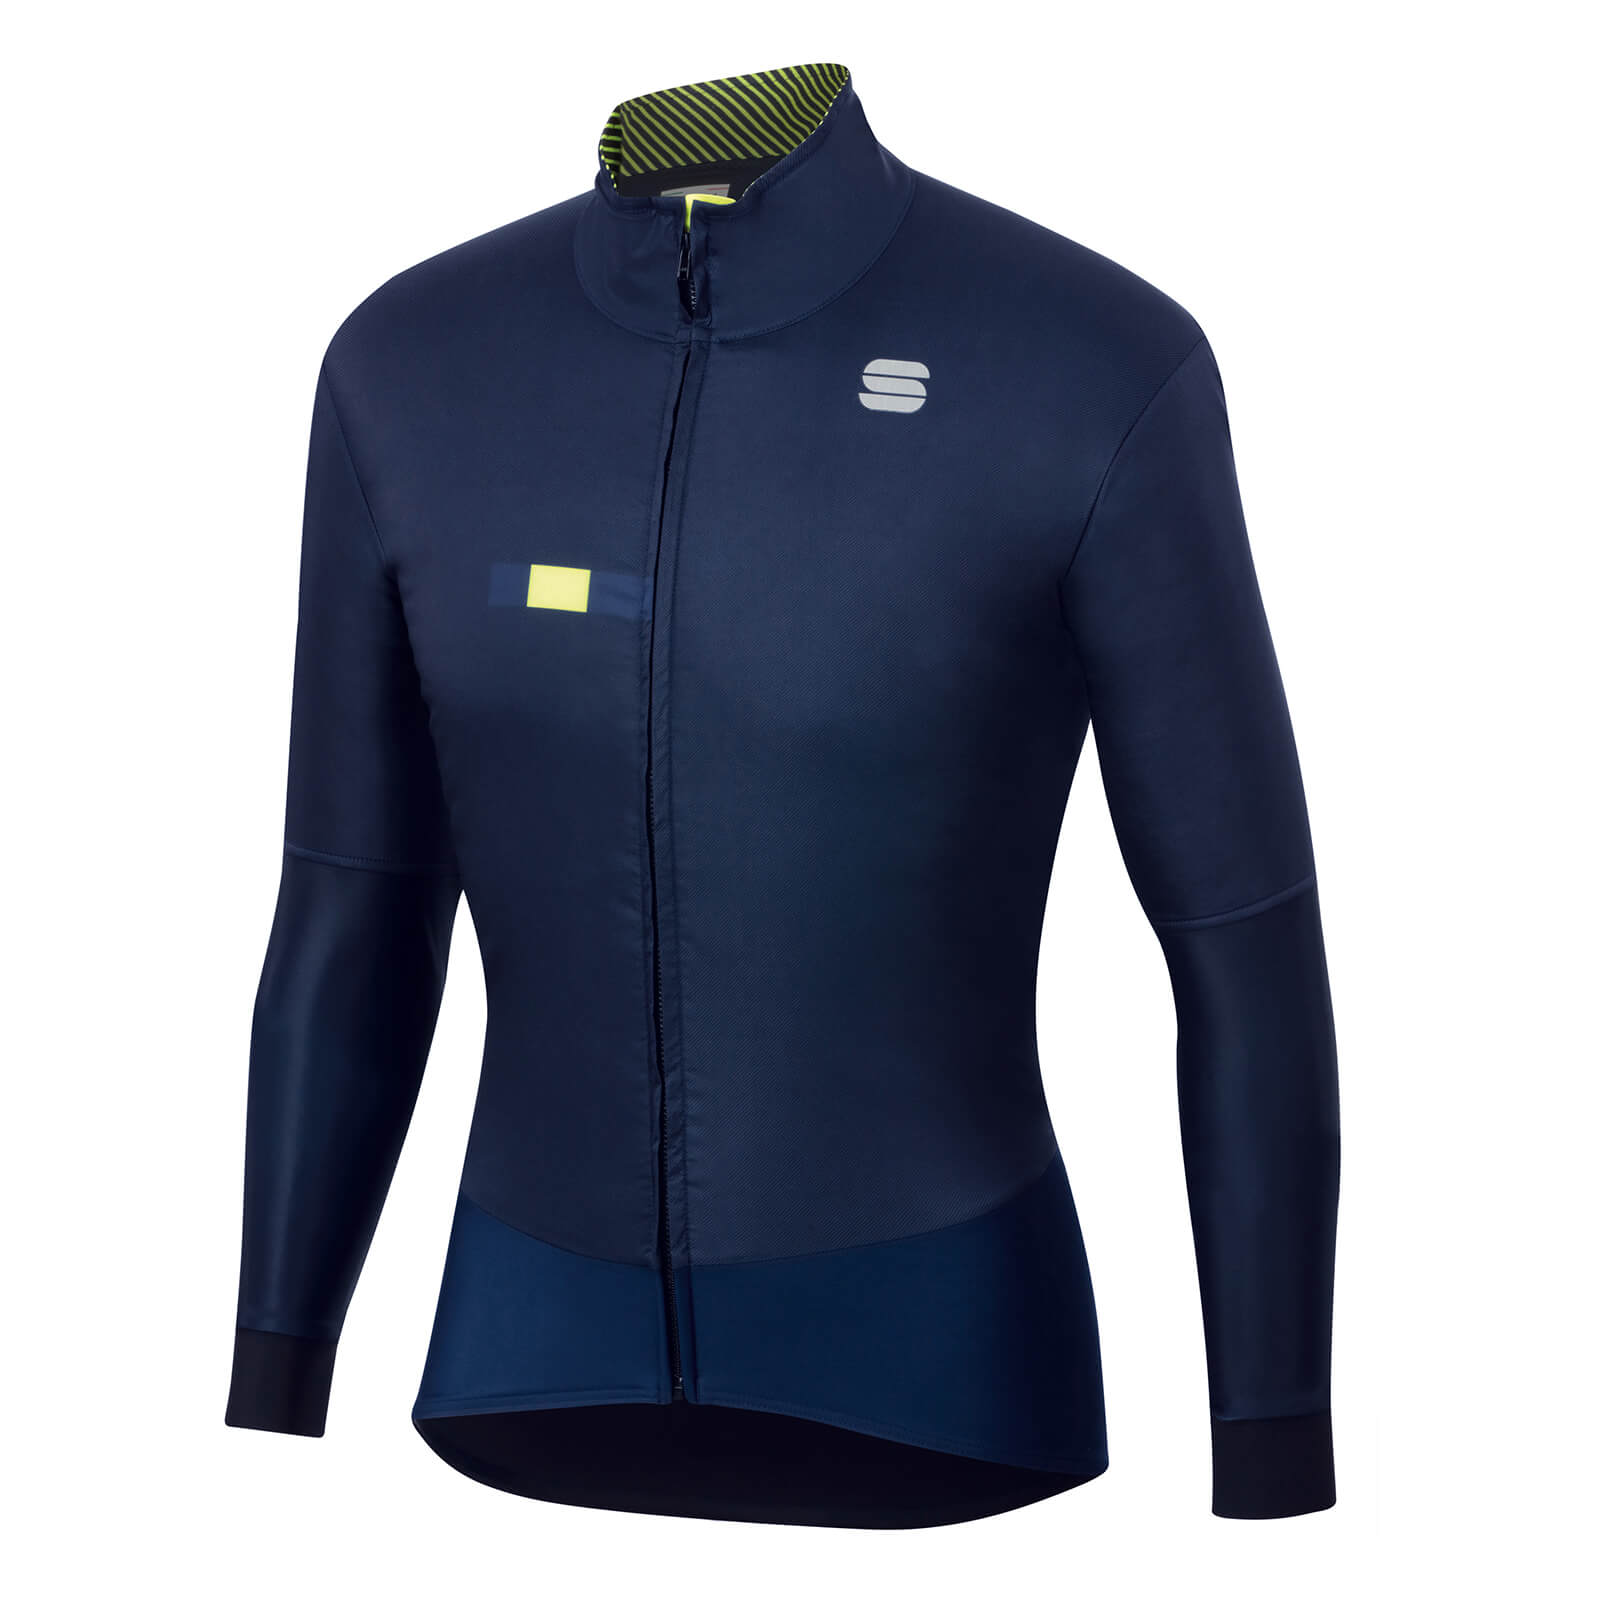 Sportful Bodyfit Pro Jacket - M - Blue/Yellow Fluo;